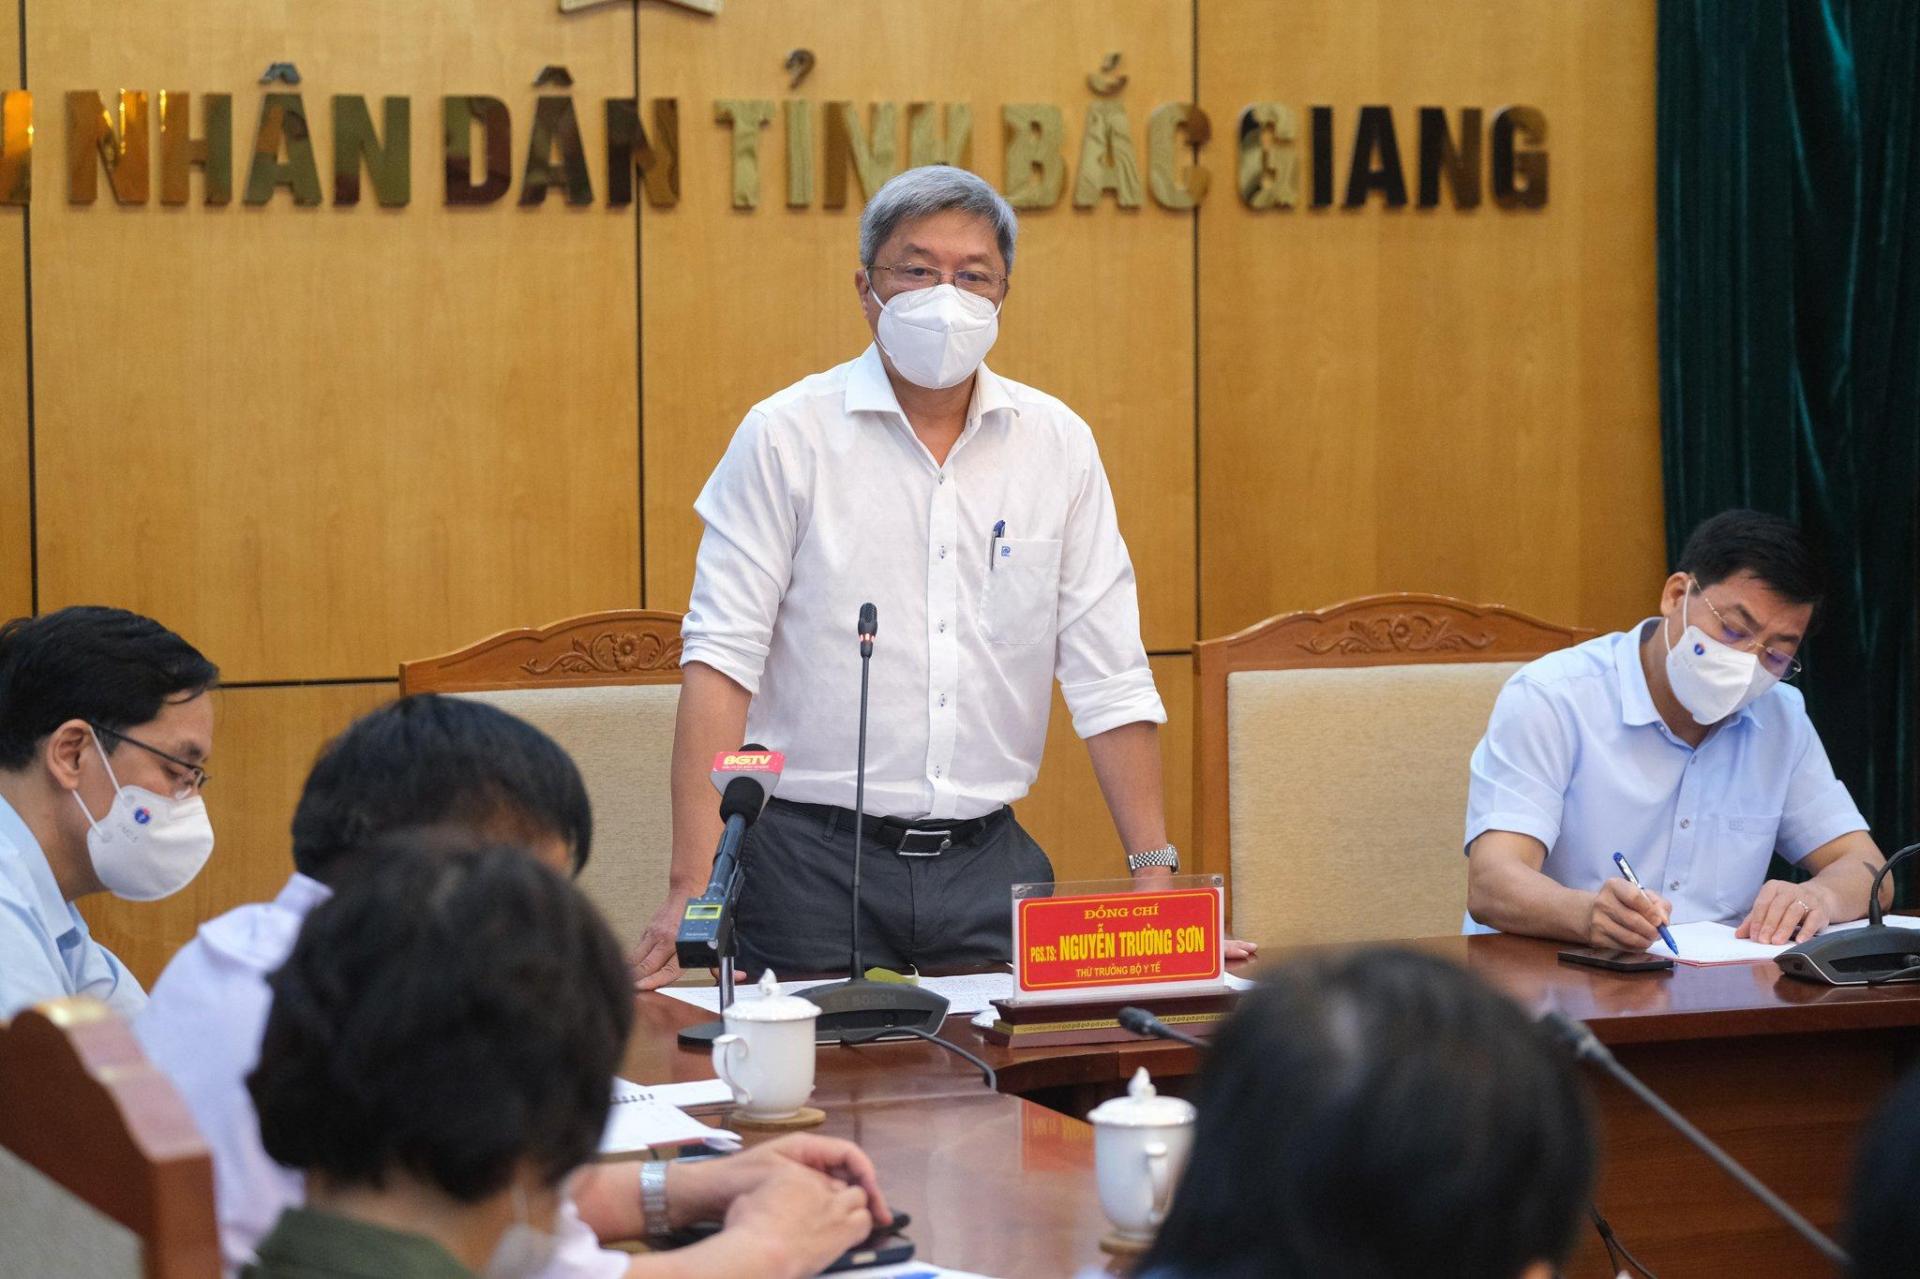 Thứ trưởng Nguyễn Trường Sơn phát biểu chỉ đạo tại cuộc họp